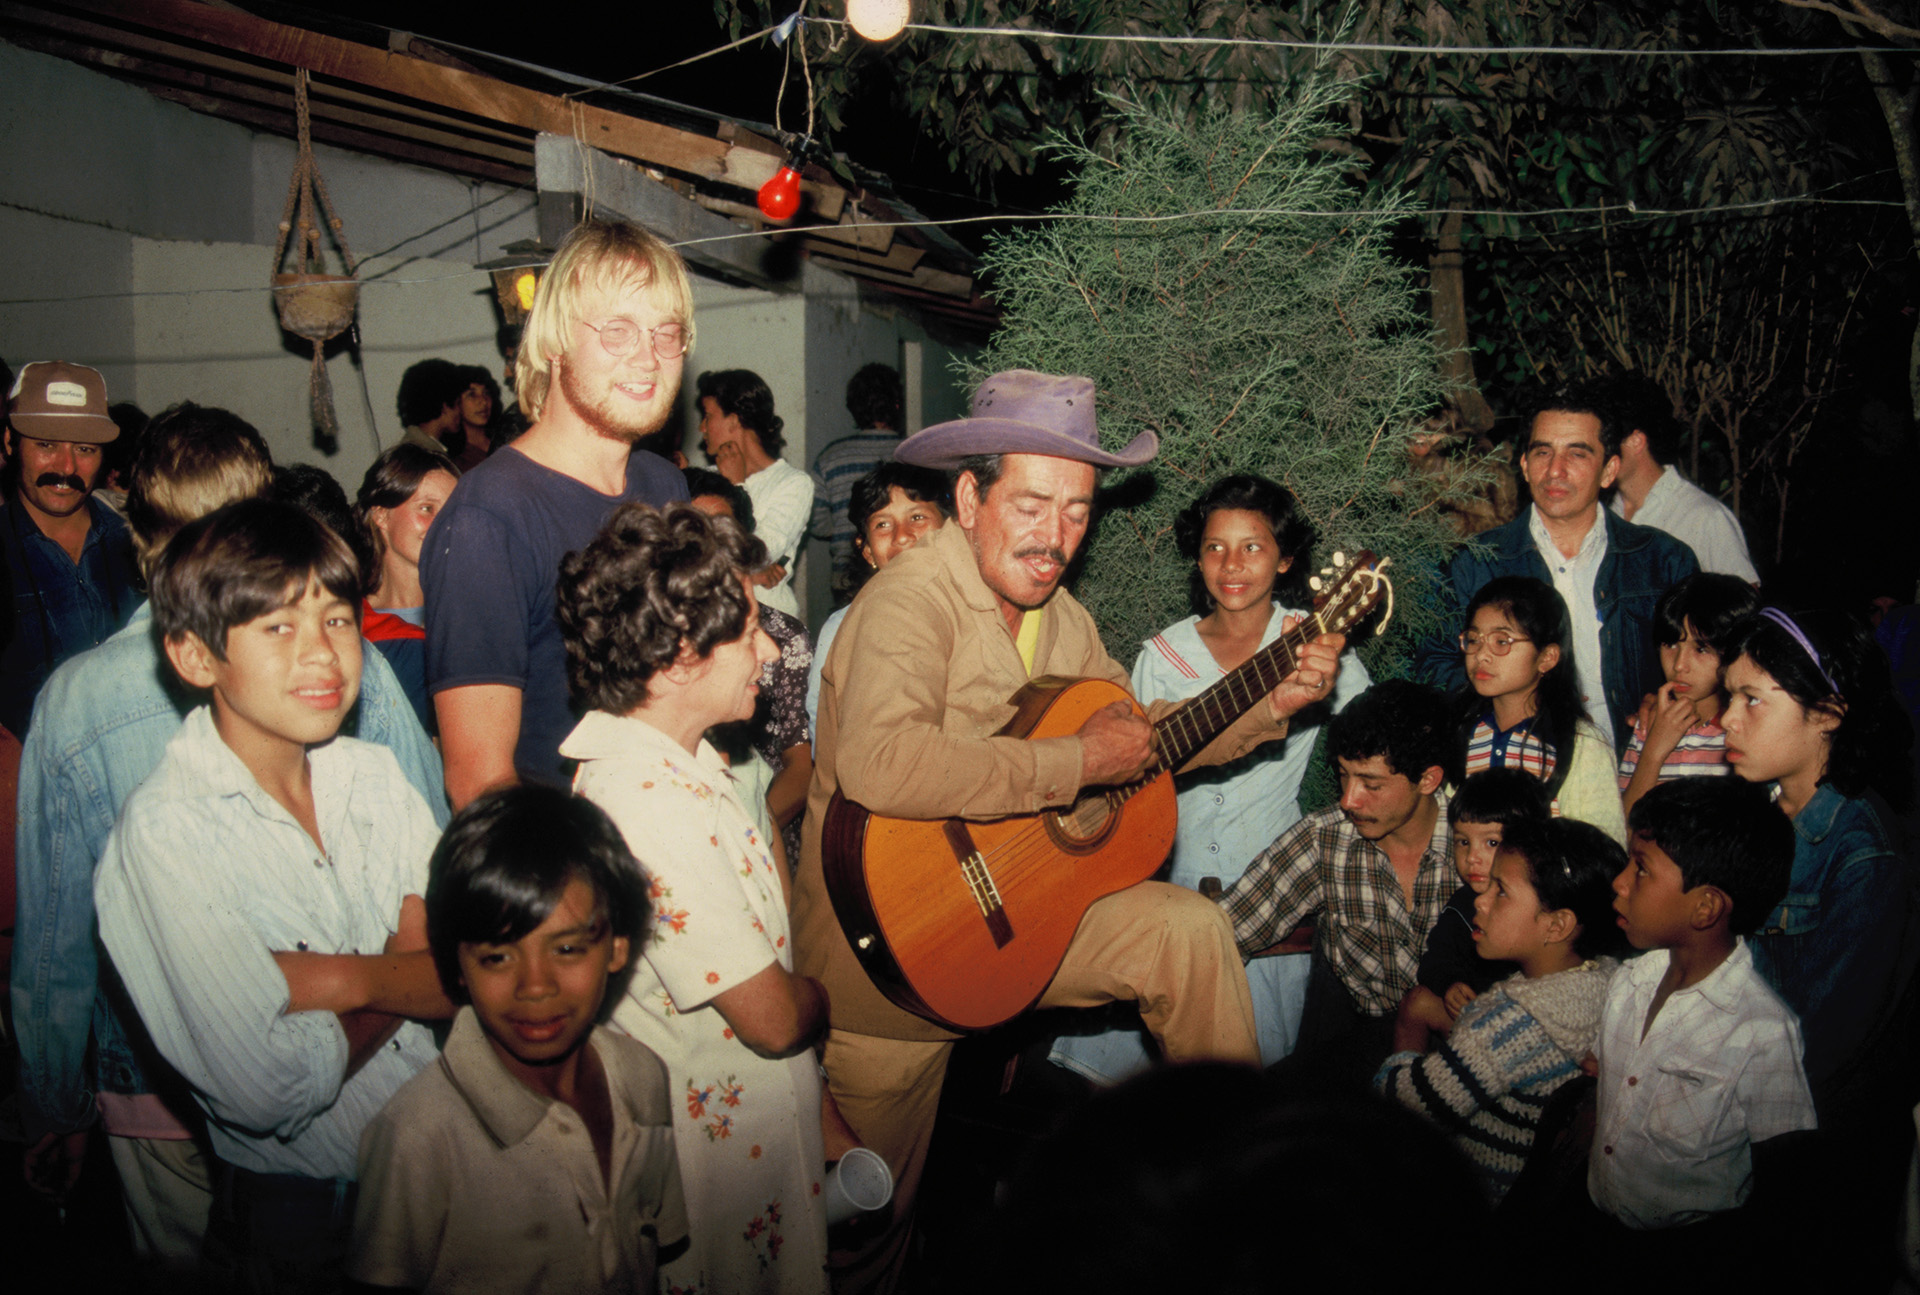 Gruppe mennesker sitter sammen i en ring rundt en person med cowboyhatt som spiller gitar. Fargerike klær.